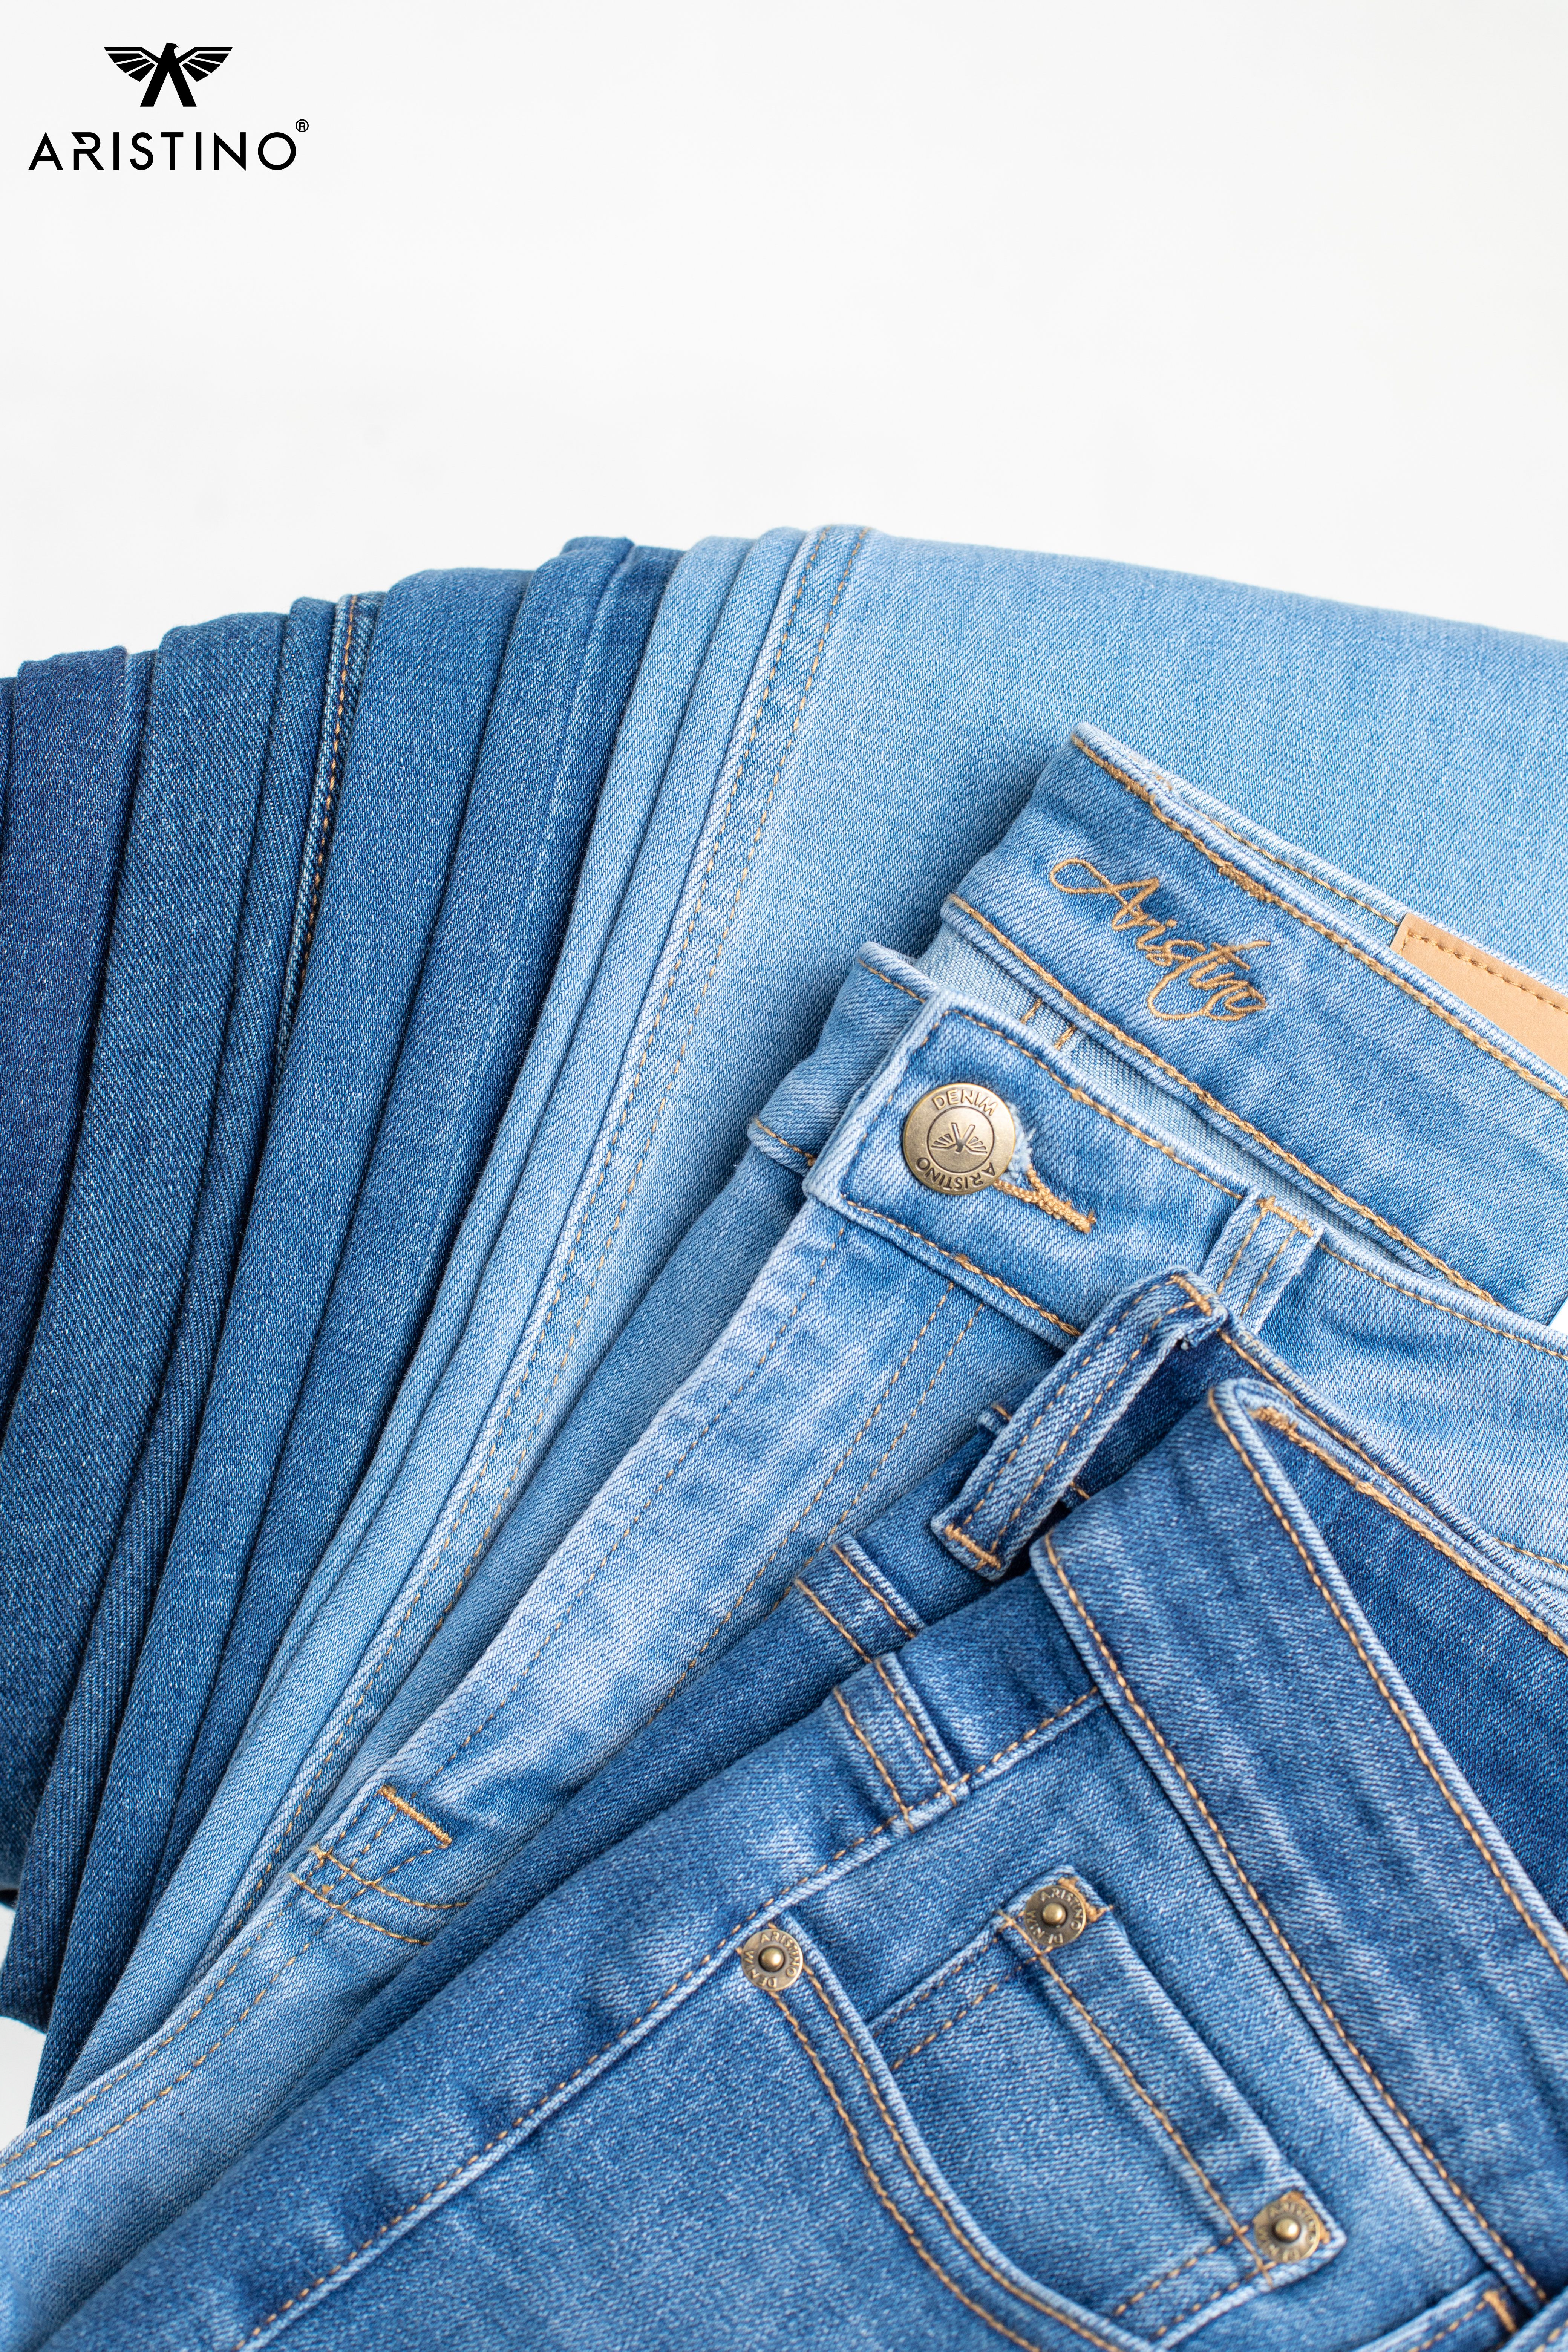 Quần jeans sẽ bền đẹp hơn rất nhiều qua việc giặt tay